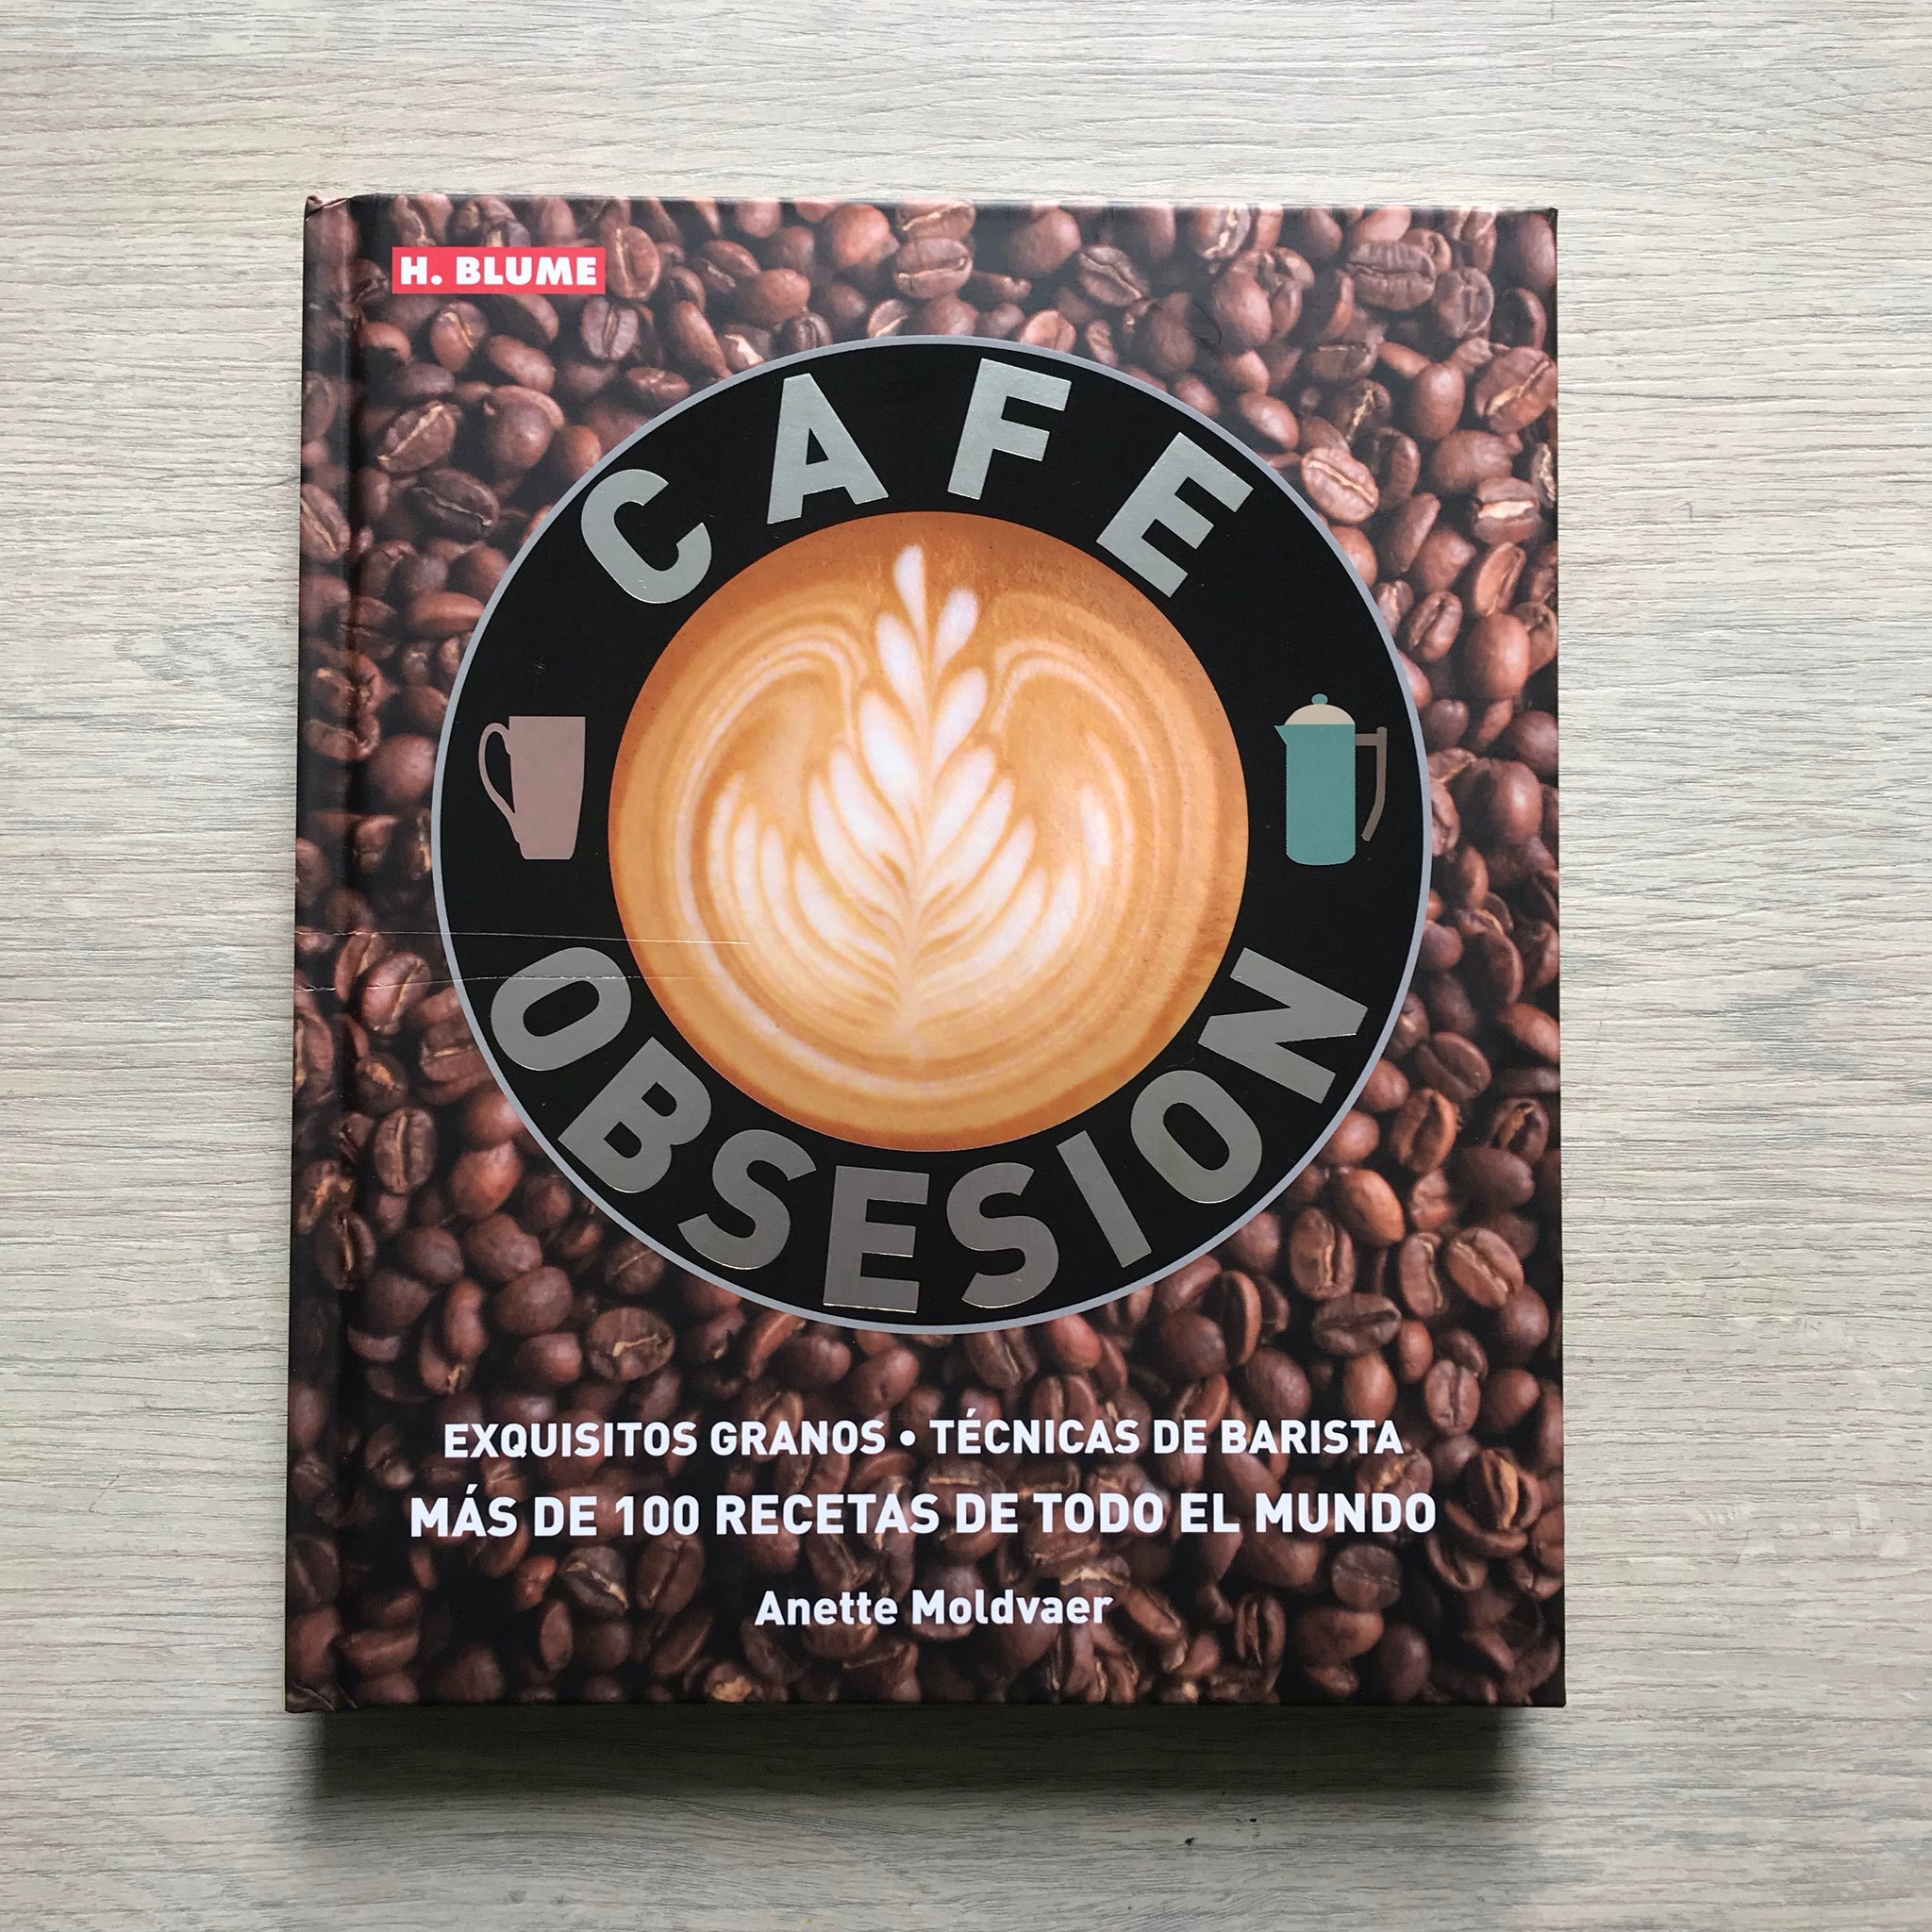 CAFE OBSESION – libreríagastronómica